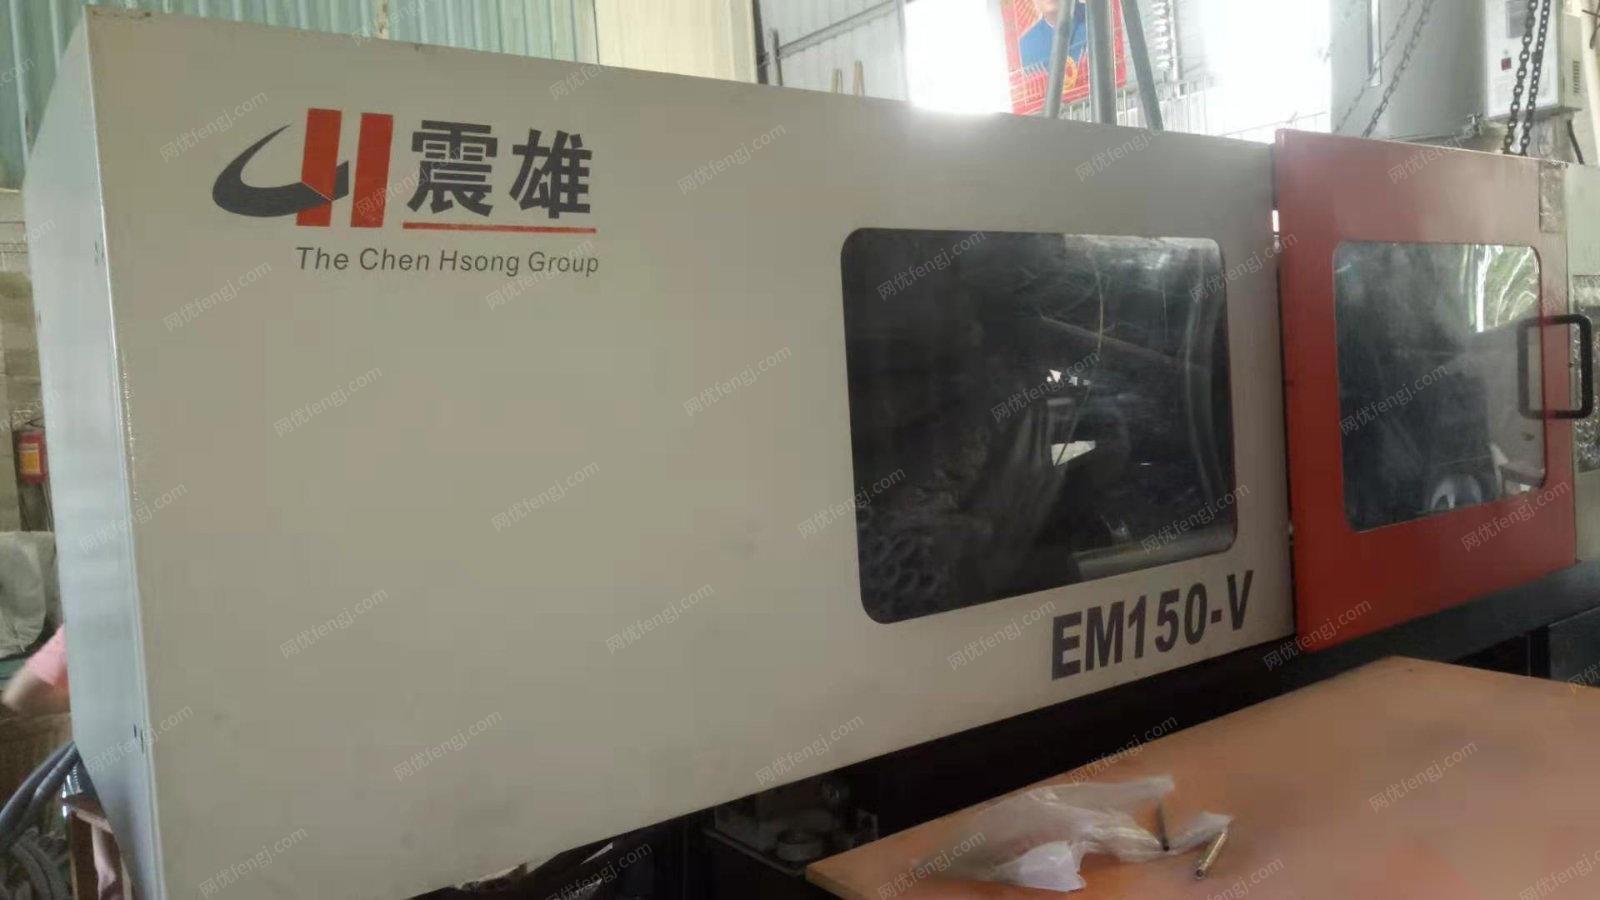 广西玉林出售1台正德二手电脑控制注塑机em150-v  出售价3万元.